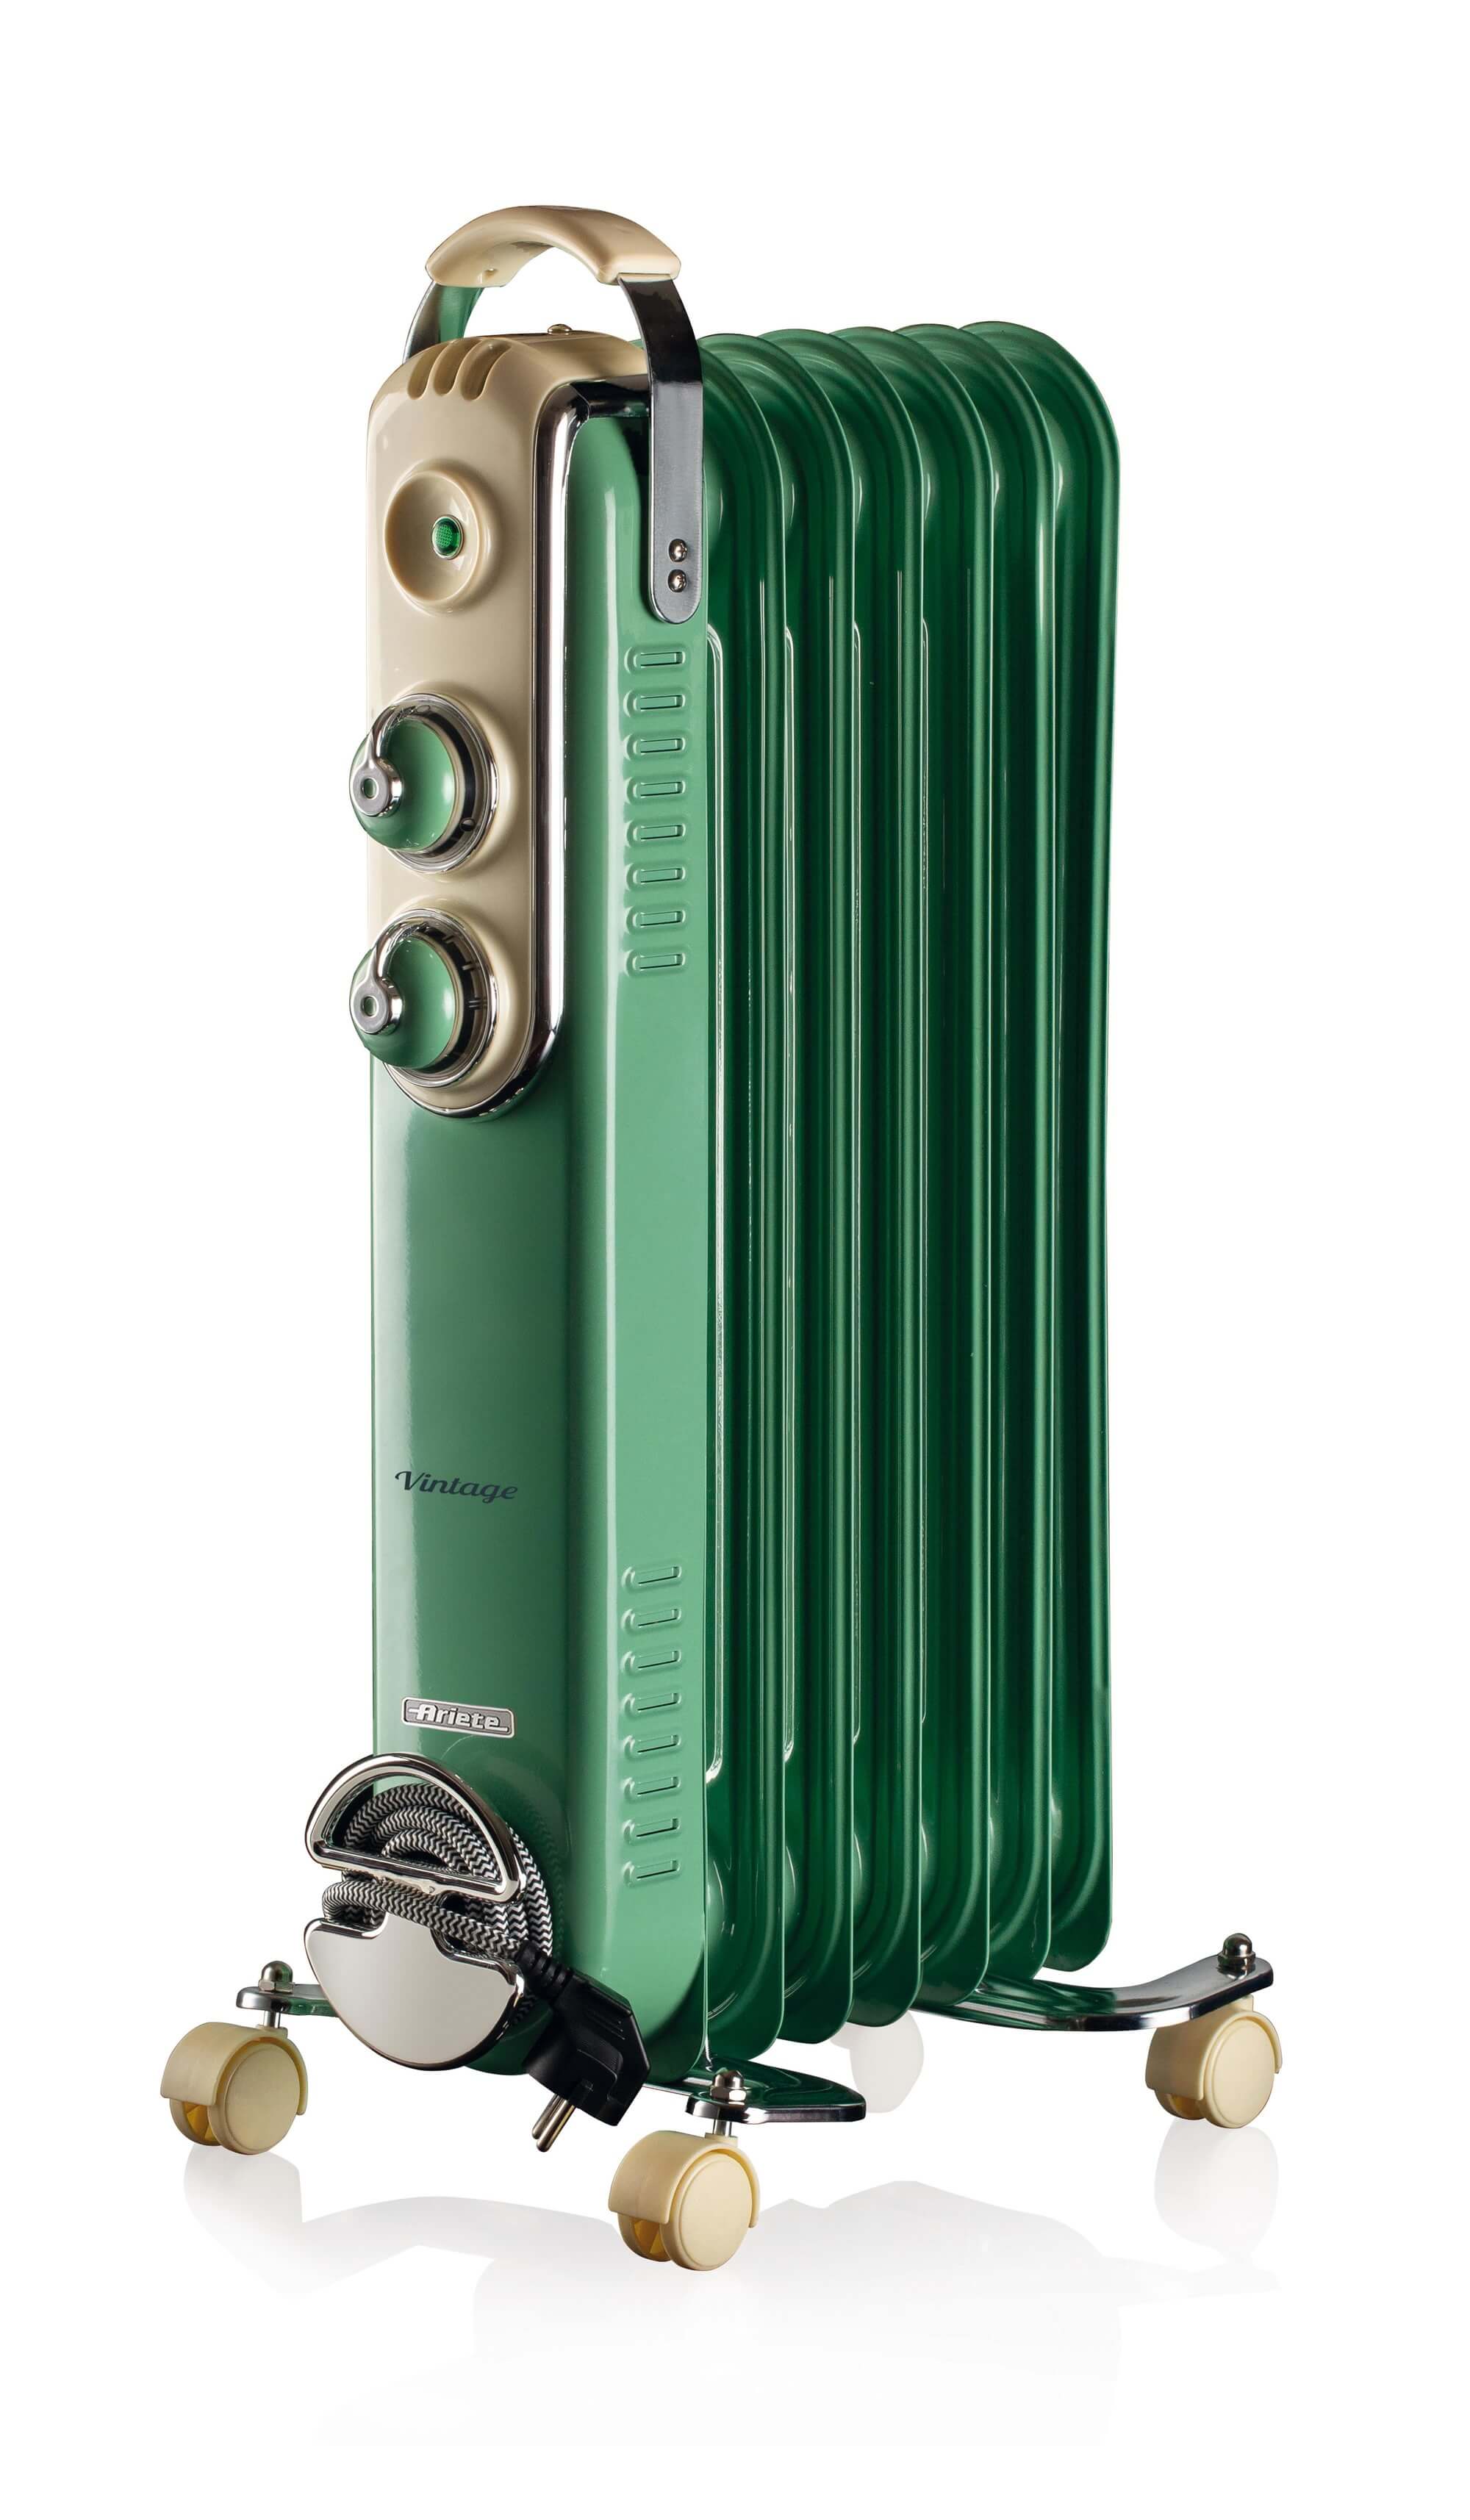 Ariete 837 Radiatore a olio Vintage Verde - 7 elementi riscaldanti - 3 livelli di potenza - Maniglia e ruote per facile trasporto - max 1500 Watt